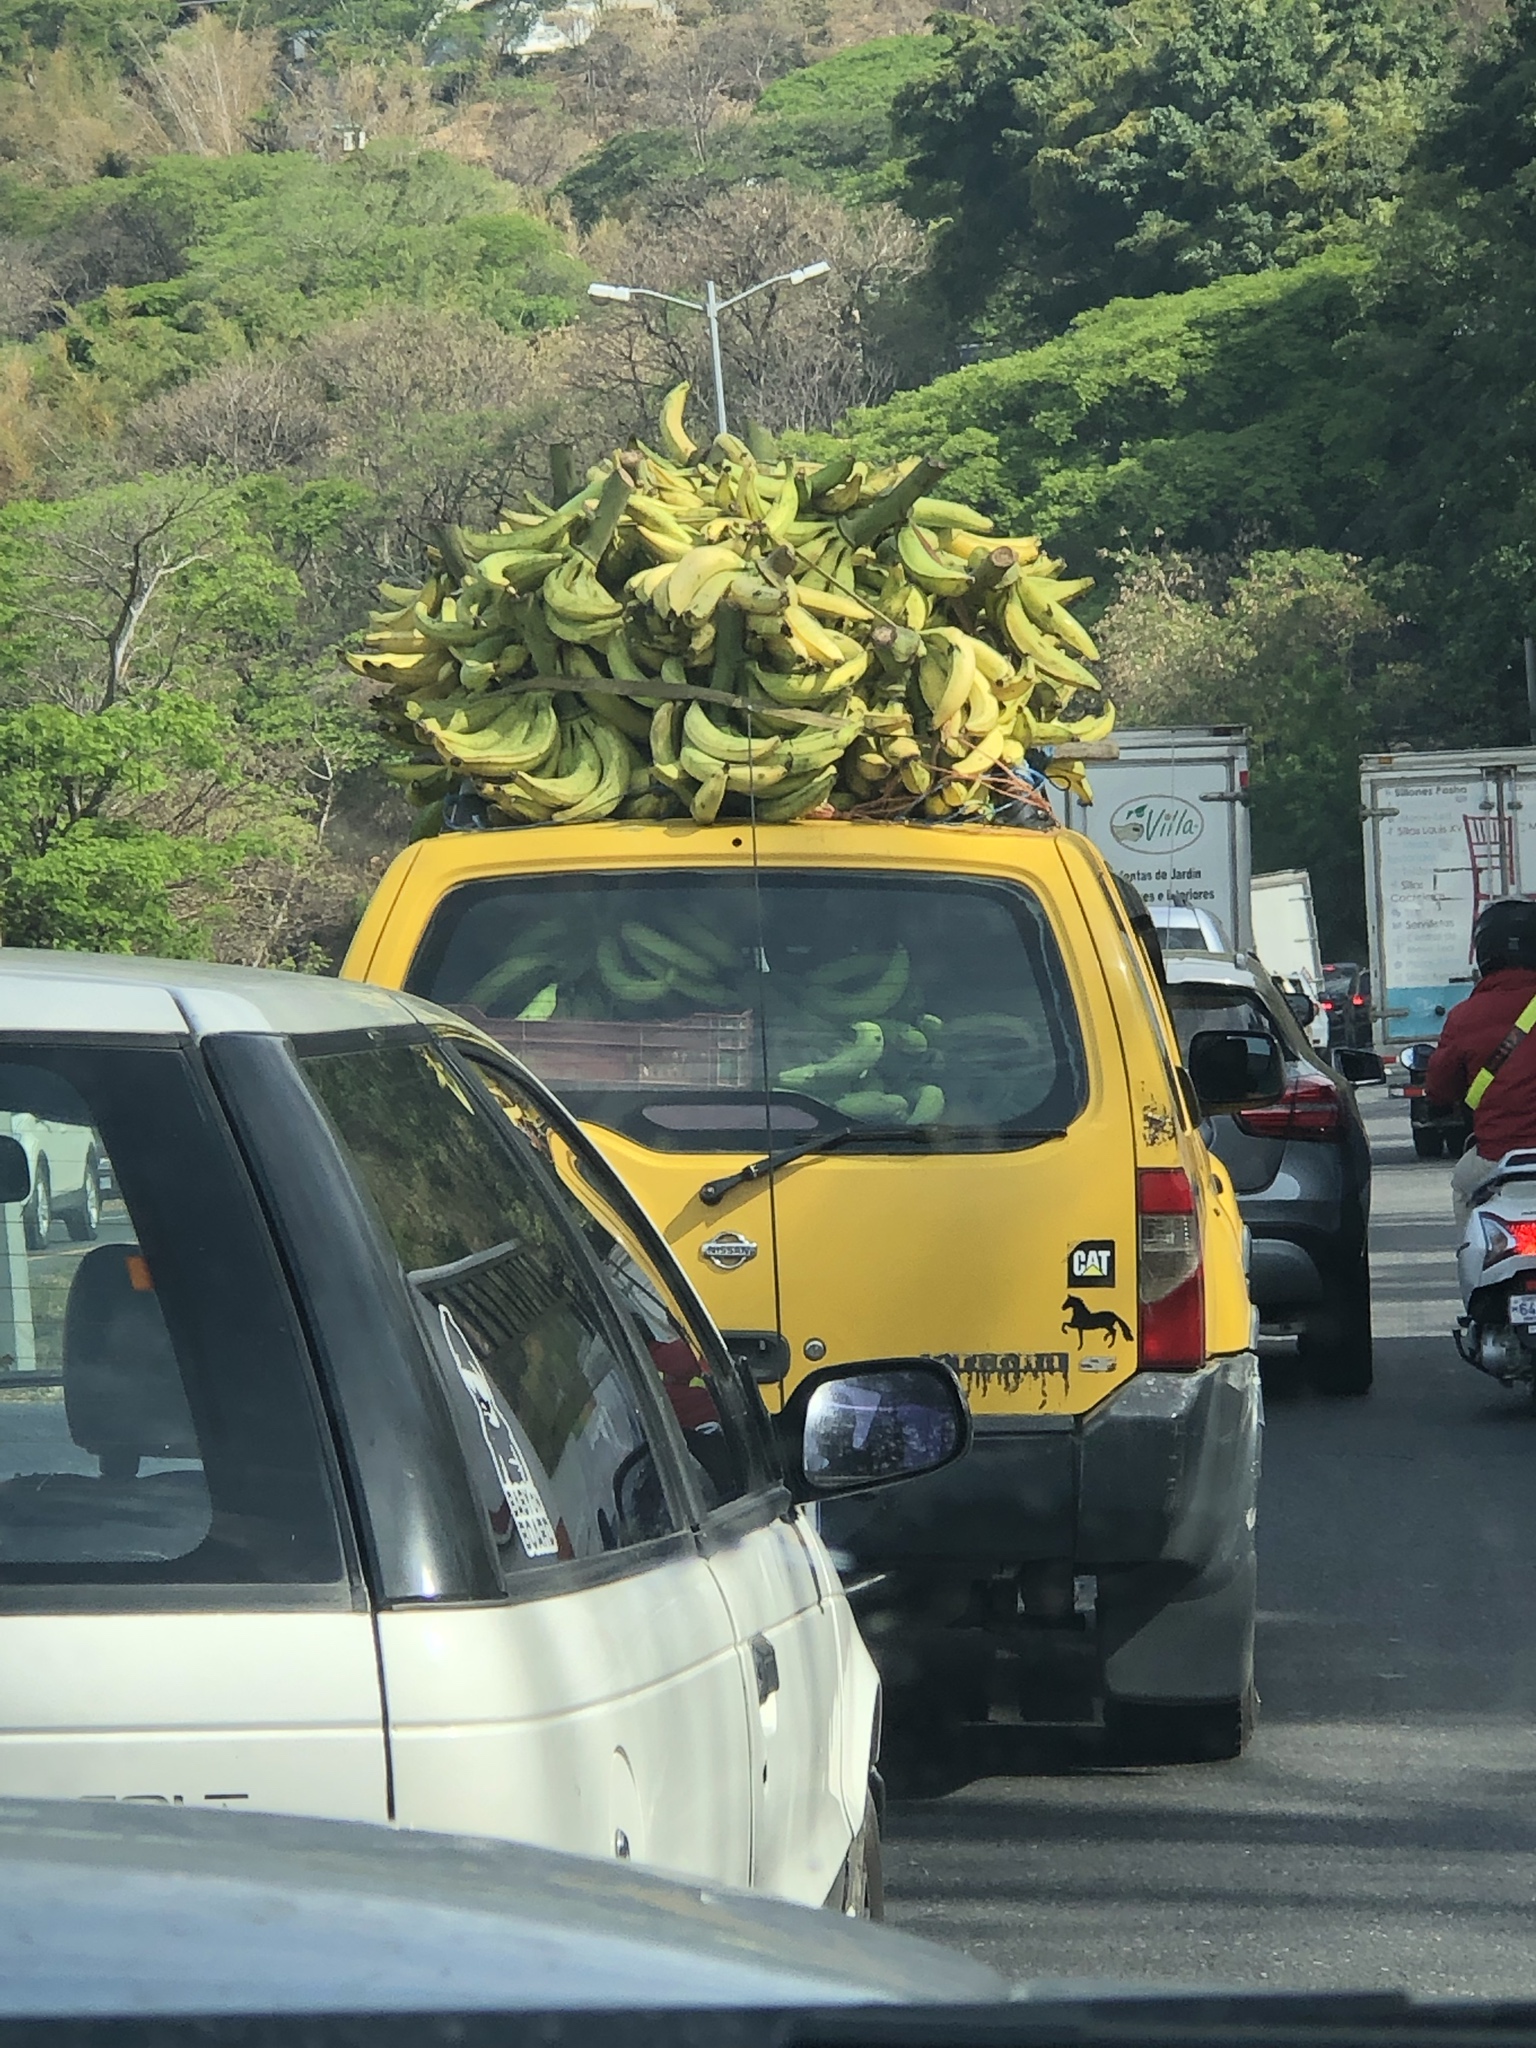 Cand nu mai ai loc sa pui banane in masina ce faci? Urmezi exemplul?